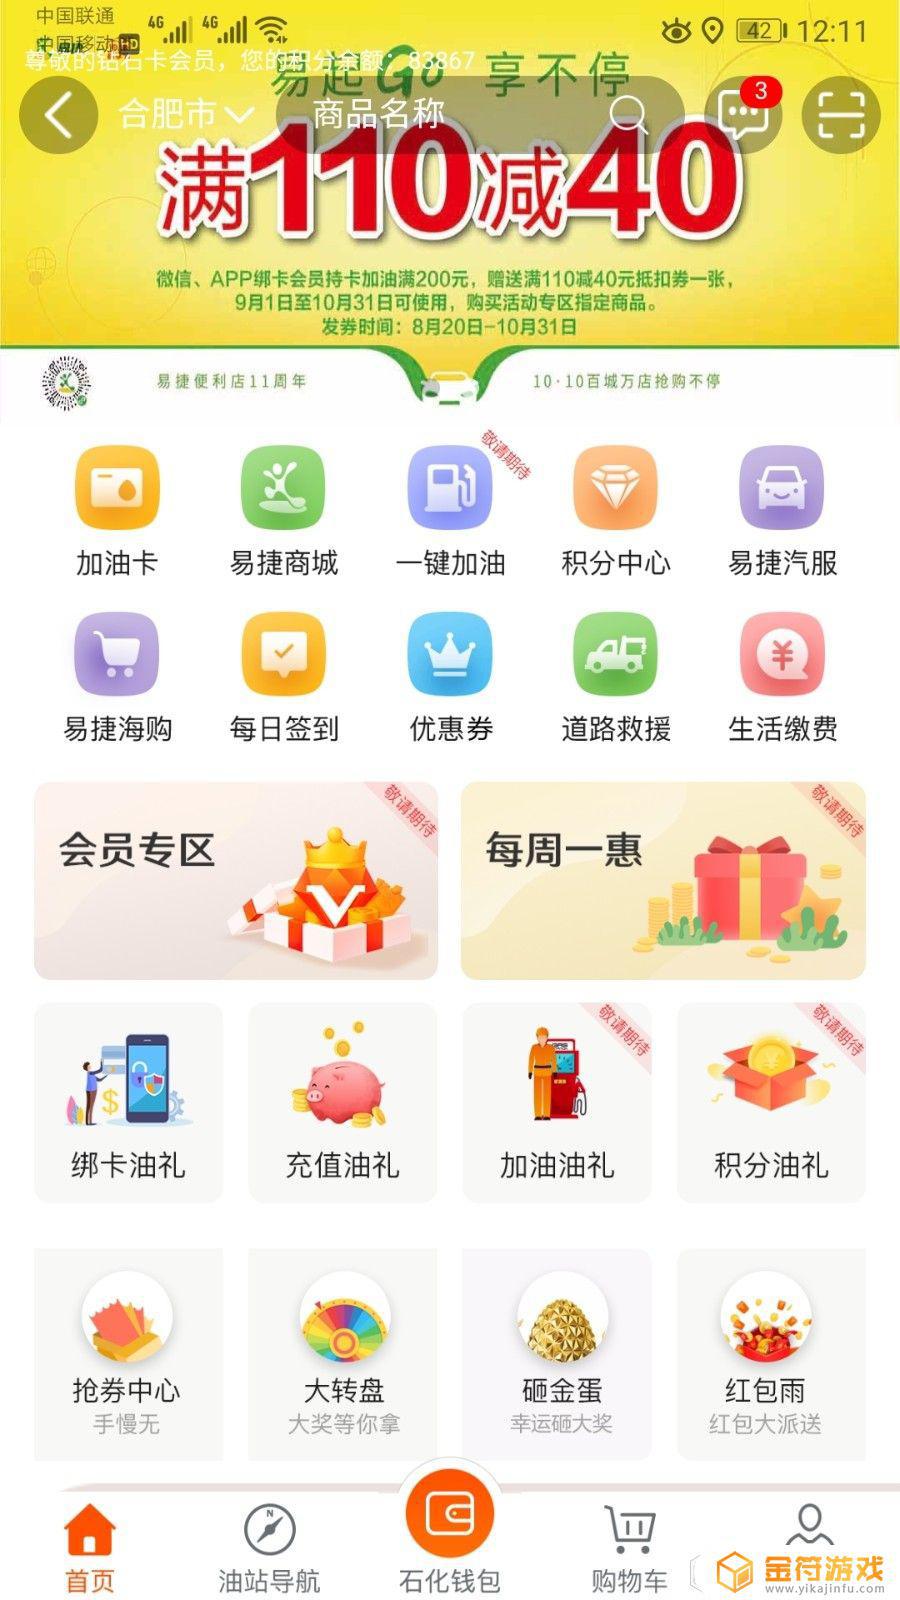 安徽石化app下载